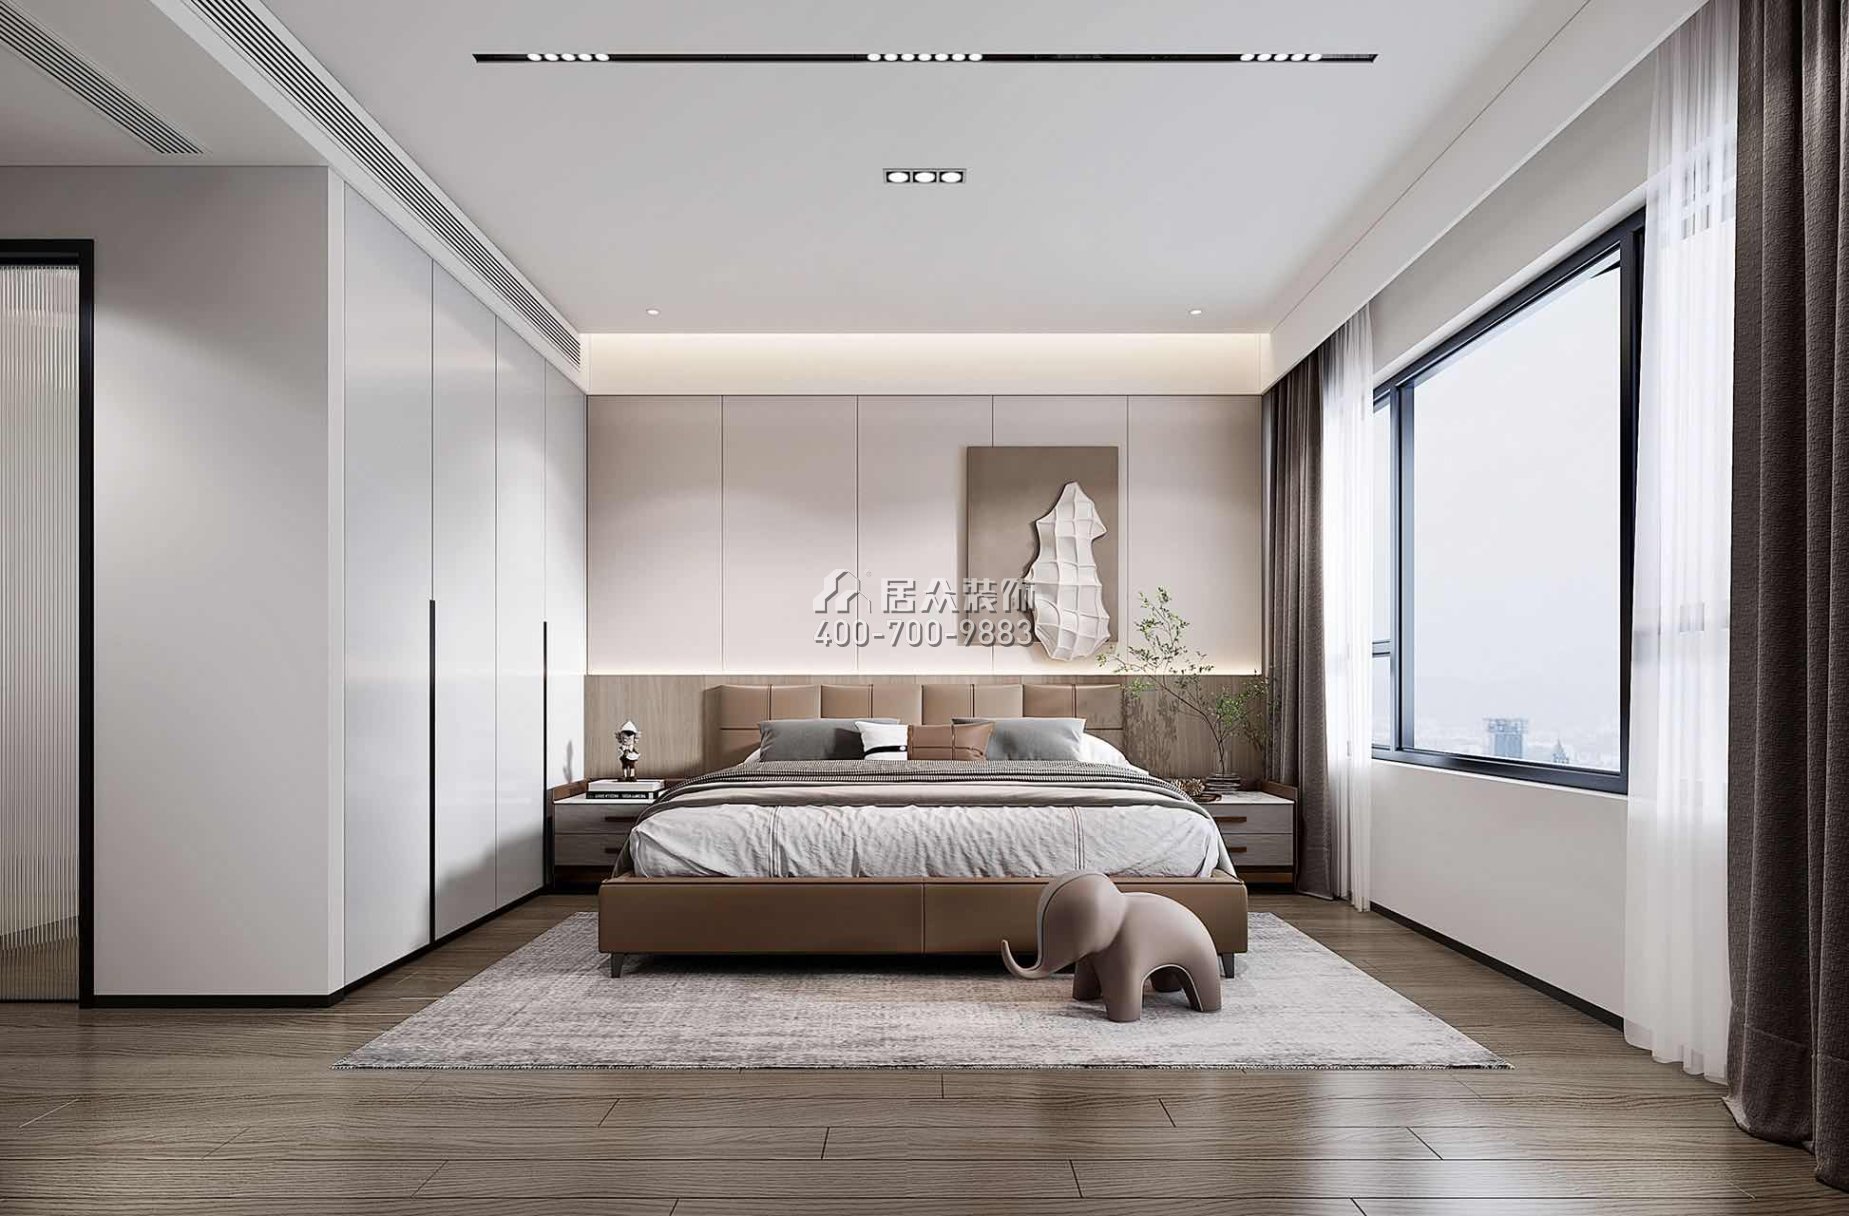 新锦安海纳公馆120平方米现代简约风格平层户型卧室装修效果图